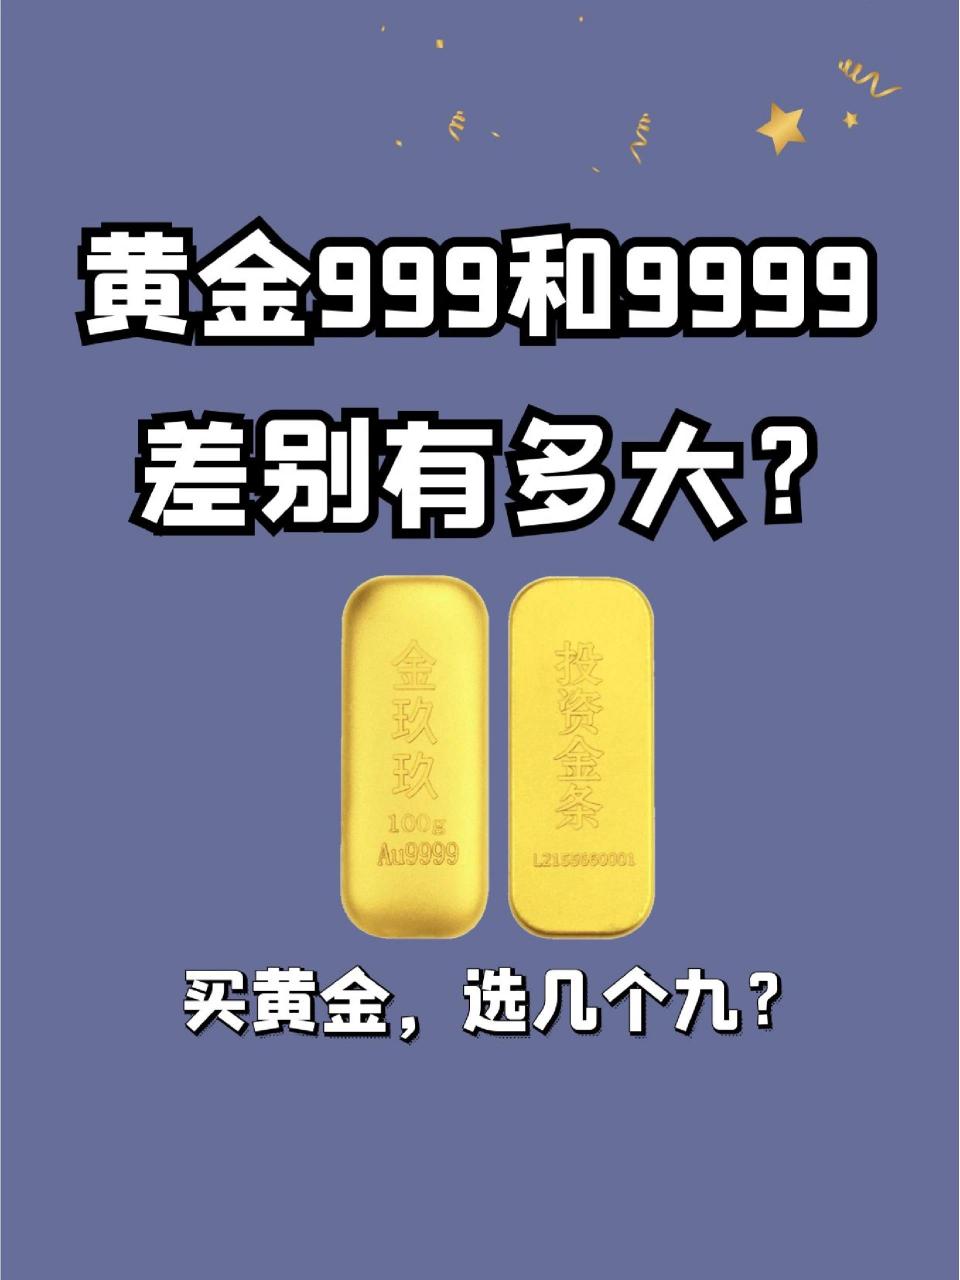 78黄金999,民间俗称千足金,是指纯度999‰以上的黄金